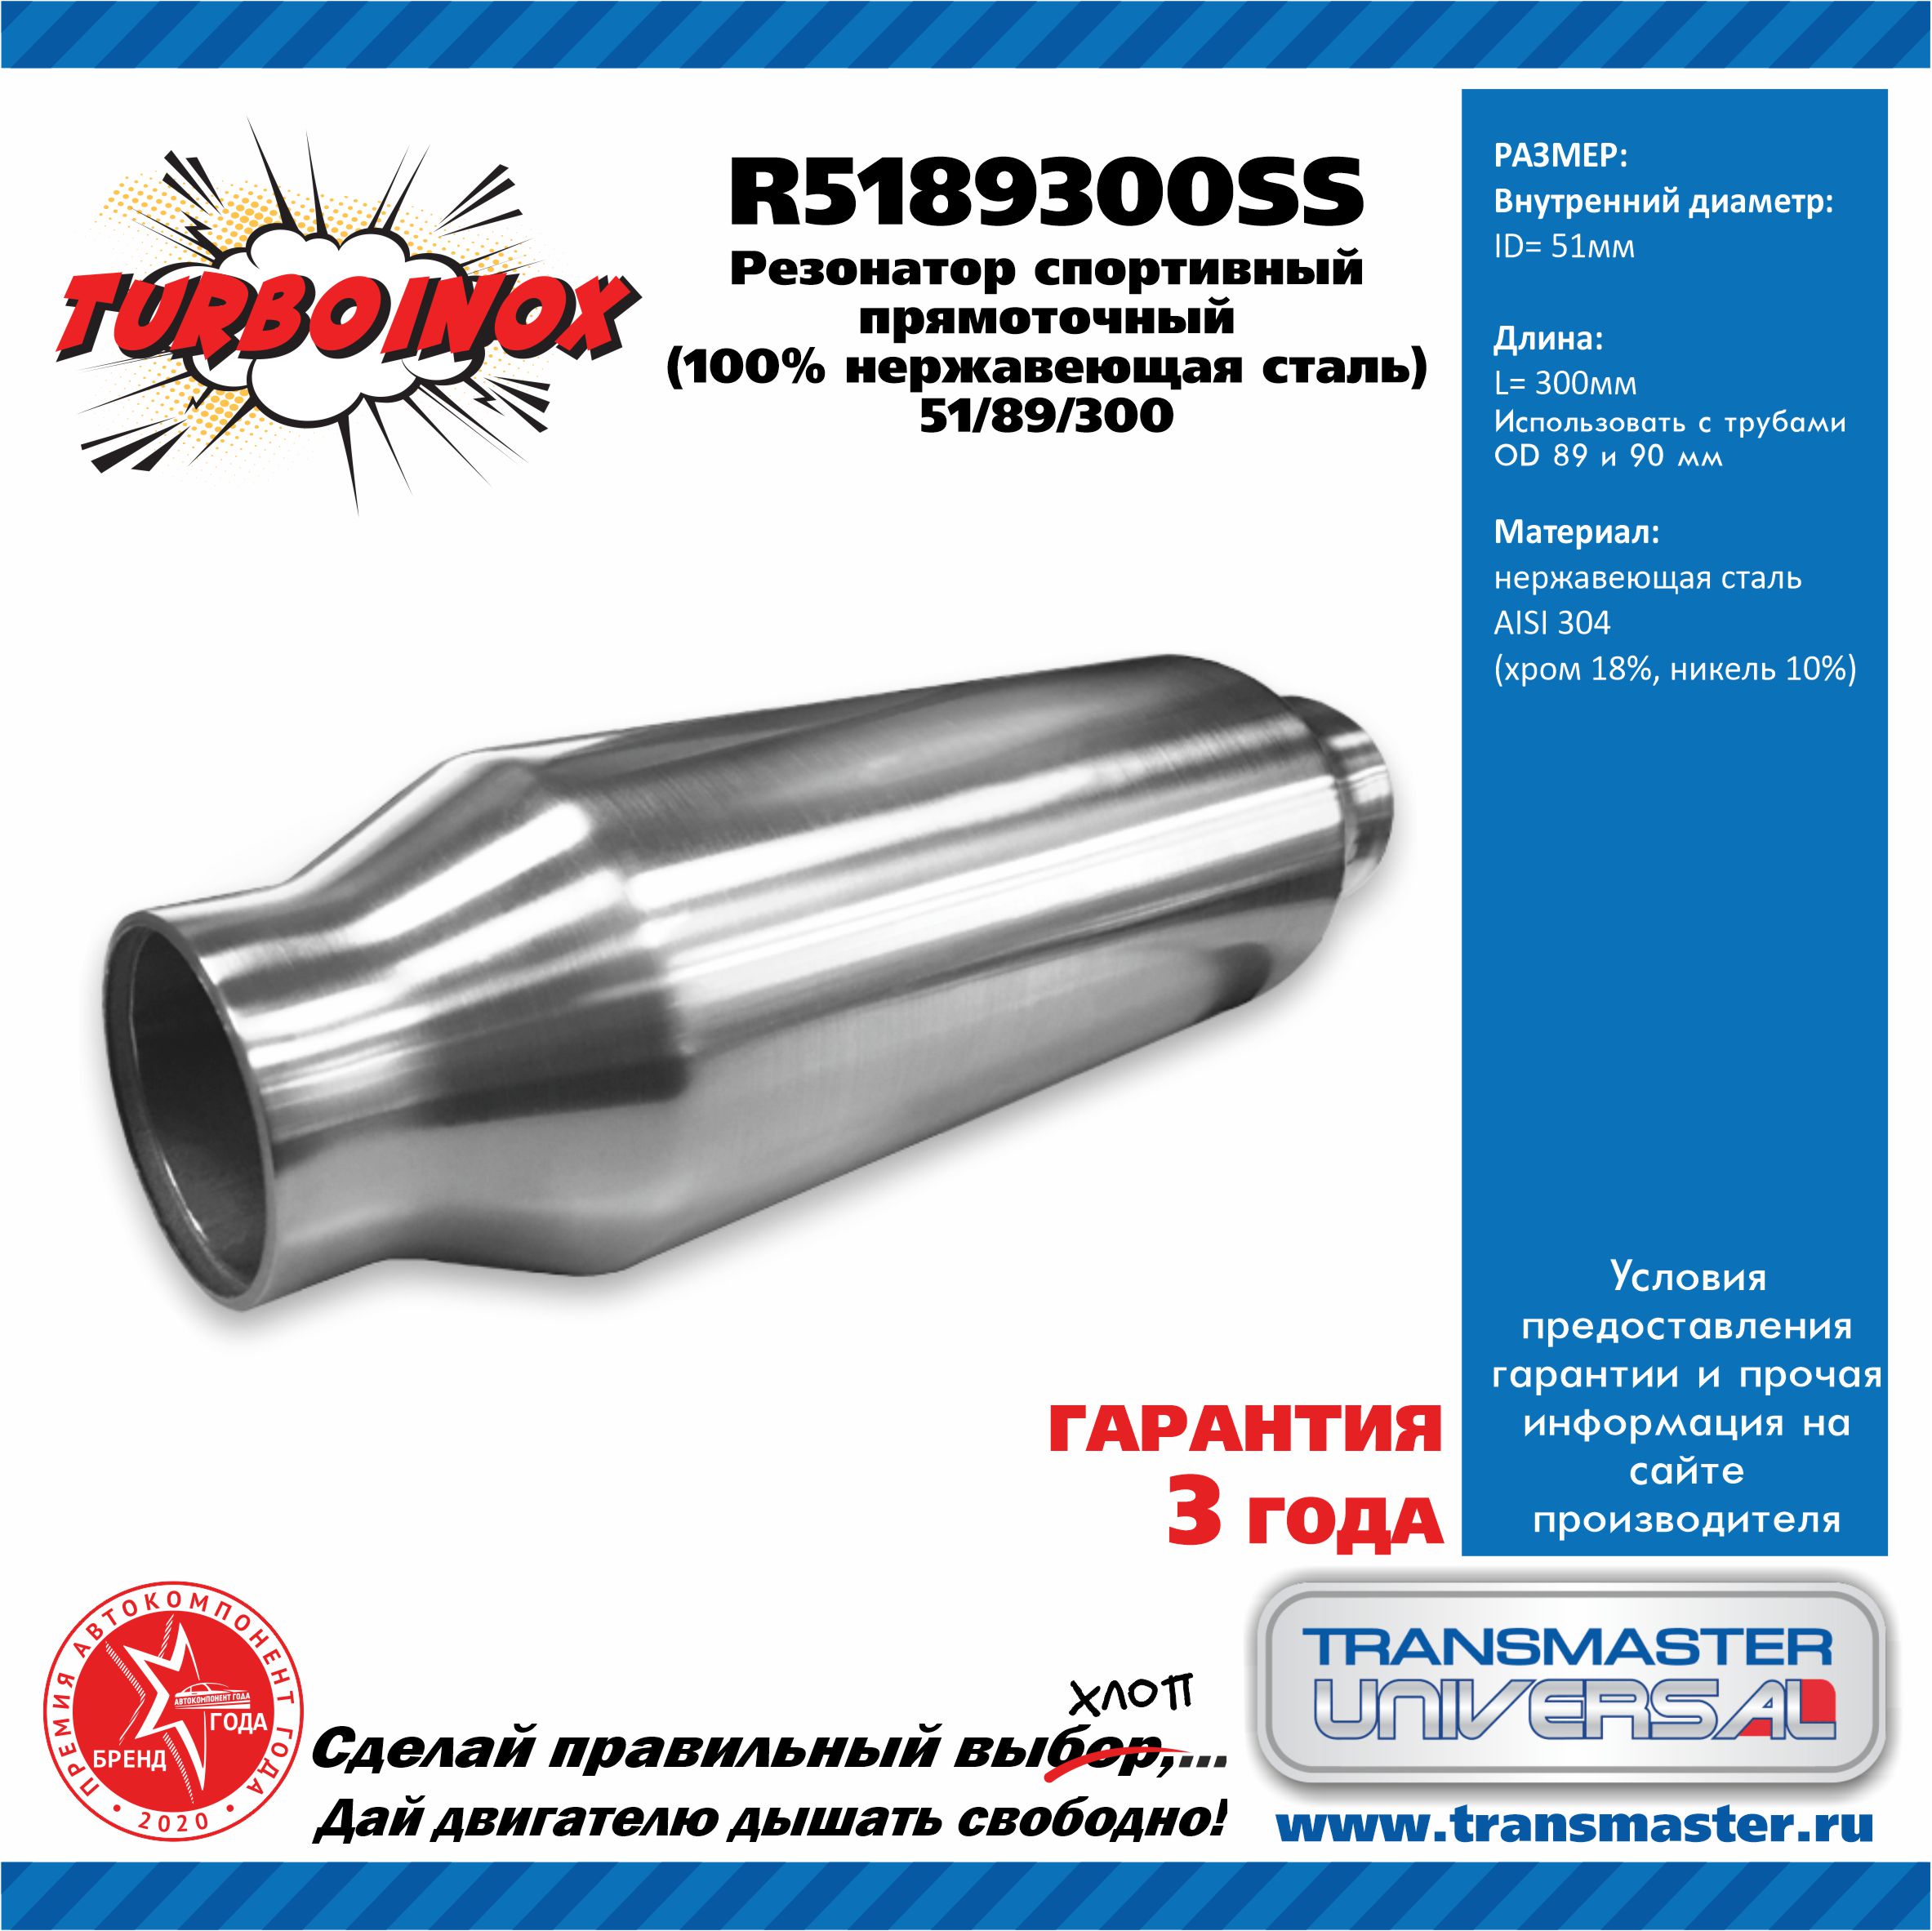 Резонатор спортивный прямоточный серия turboinox (100% нержавеющая сталь) - TRANSMASTER UNIVERSAL R5189300SS